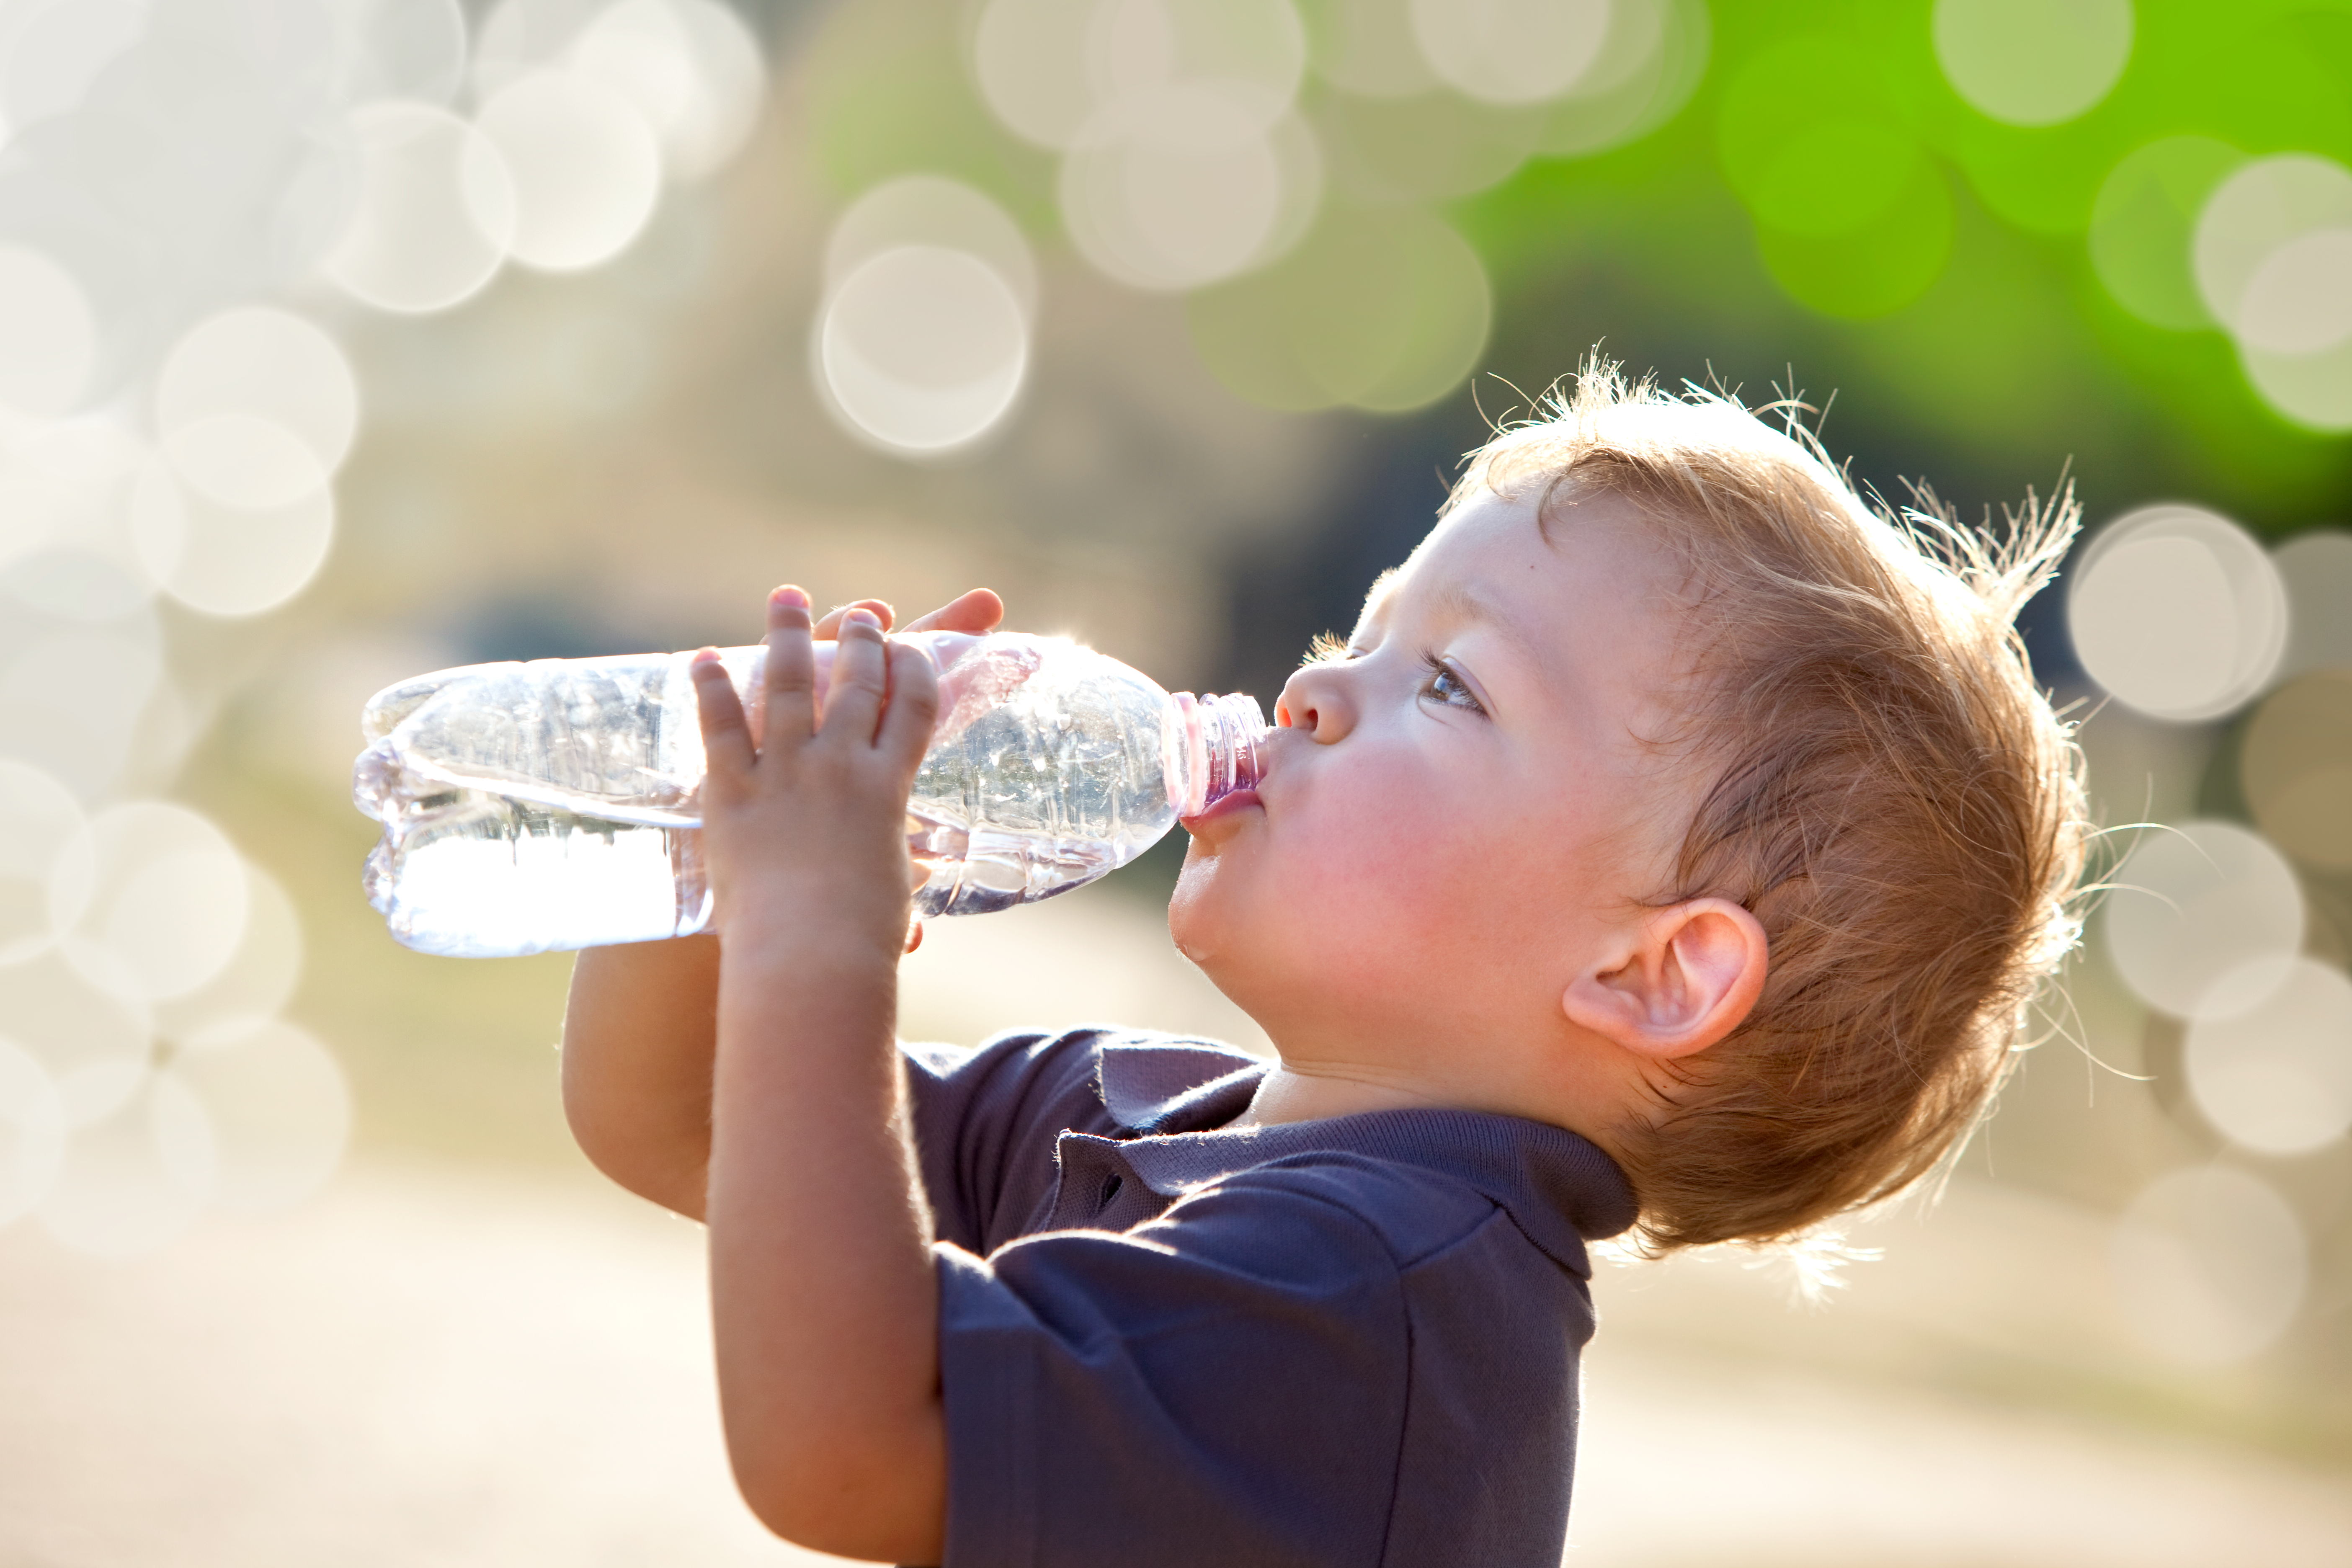 Little boy drinking from a bottle (iStock/PA)